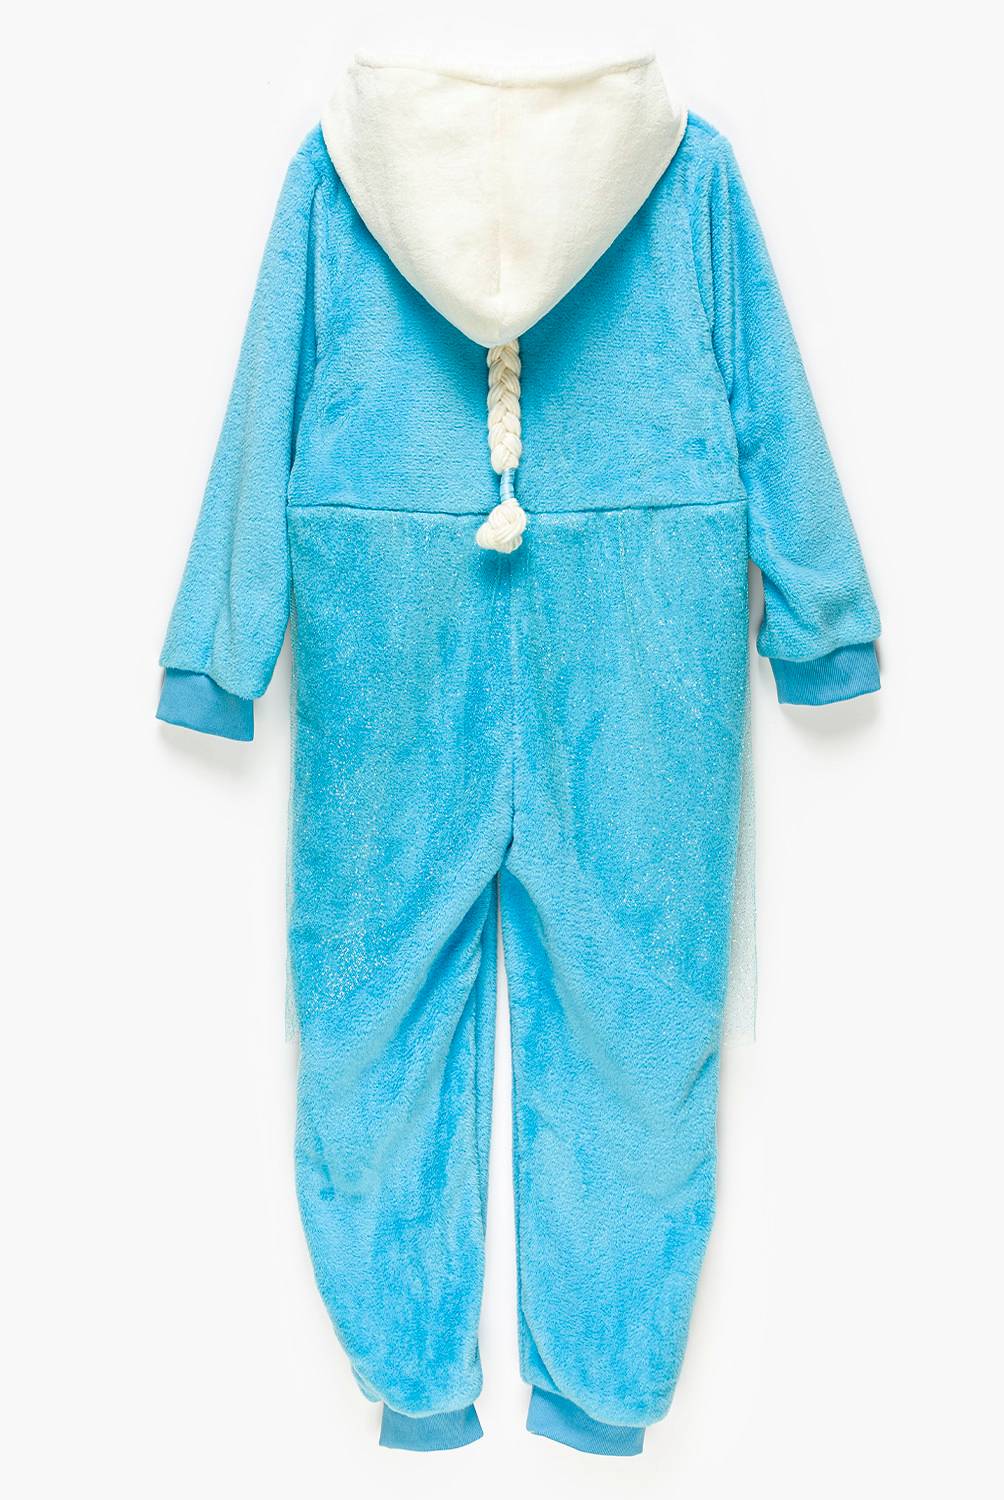 Frozen - Pijama Niña